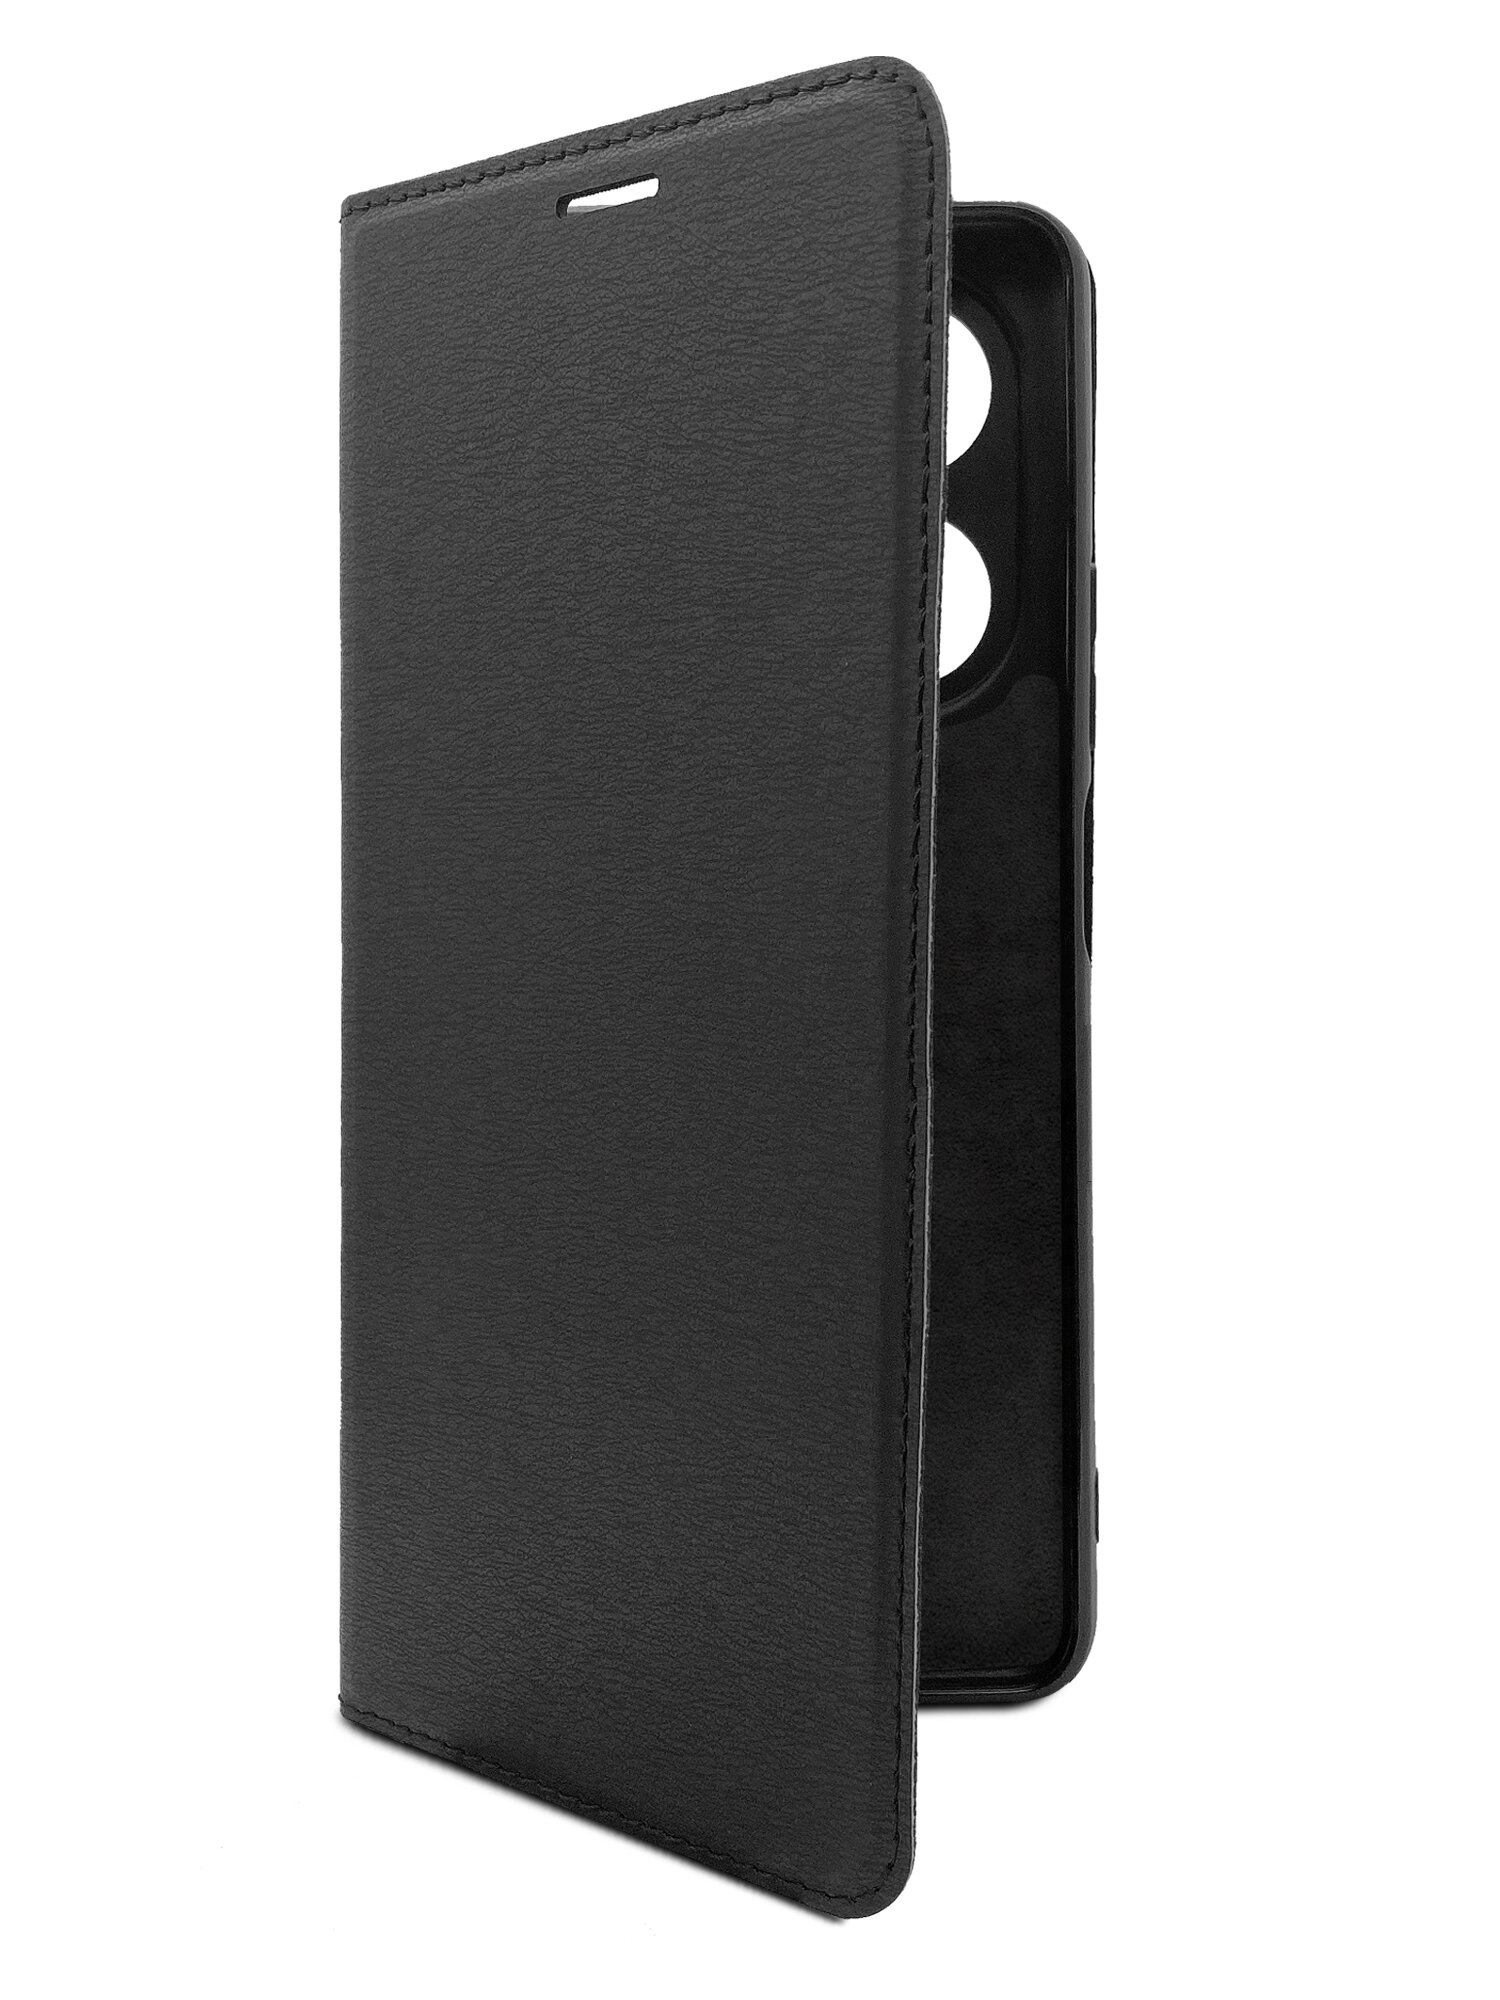 Чехол на Infinix HOT 40 (Инфиникс Хот 40) черный книжка эко-кожа с функцией подставки отделением для пластиковых карт и магнитами Book case, Miuko